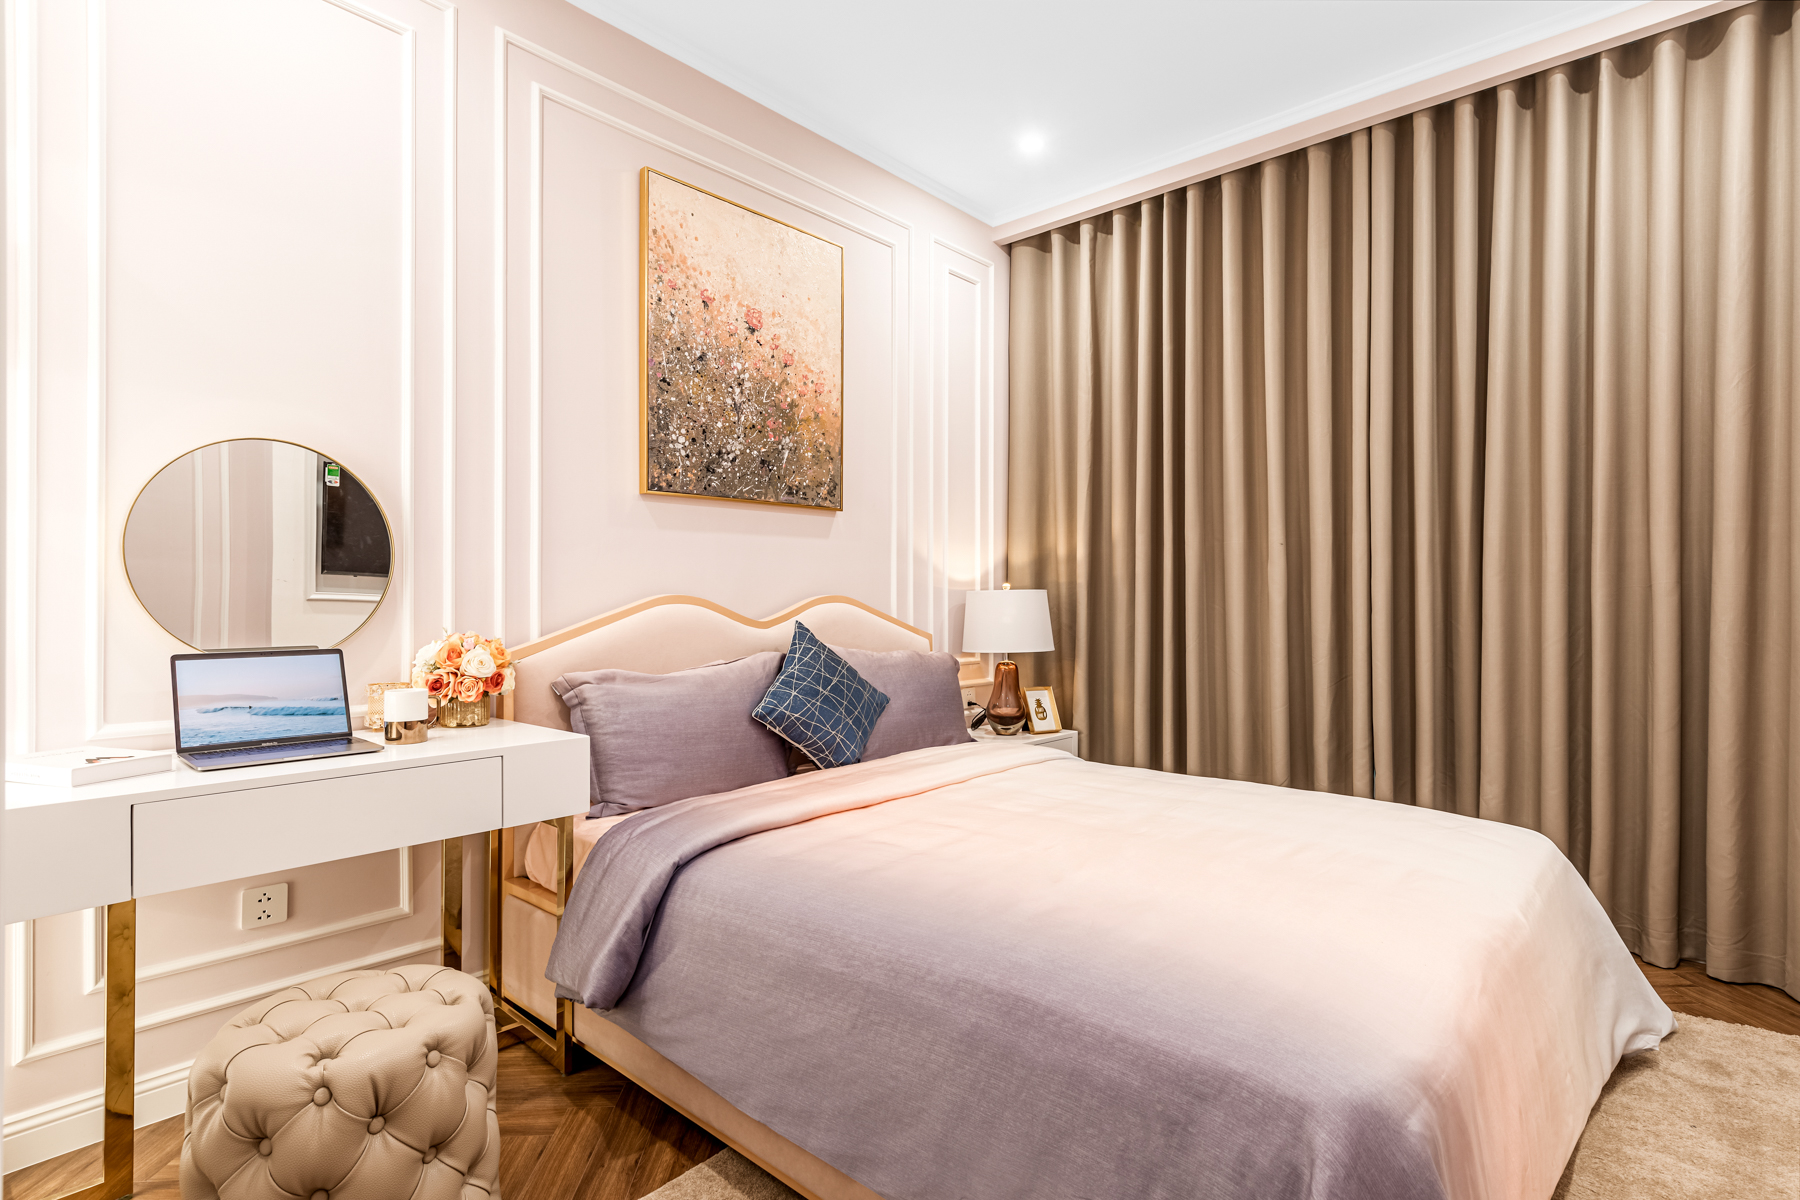 Căn hộ chung cư 70m2 với 2 phòng ngủ được thiết kế theo phong cách tân cổ điển